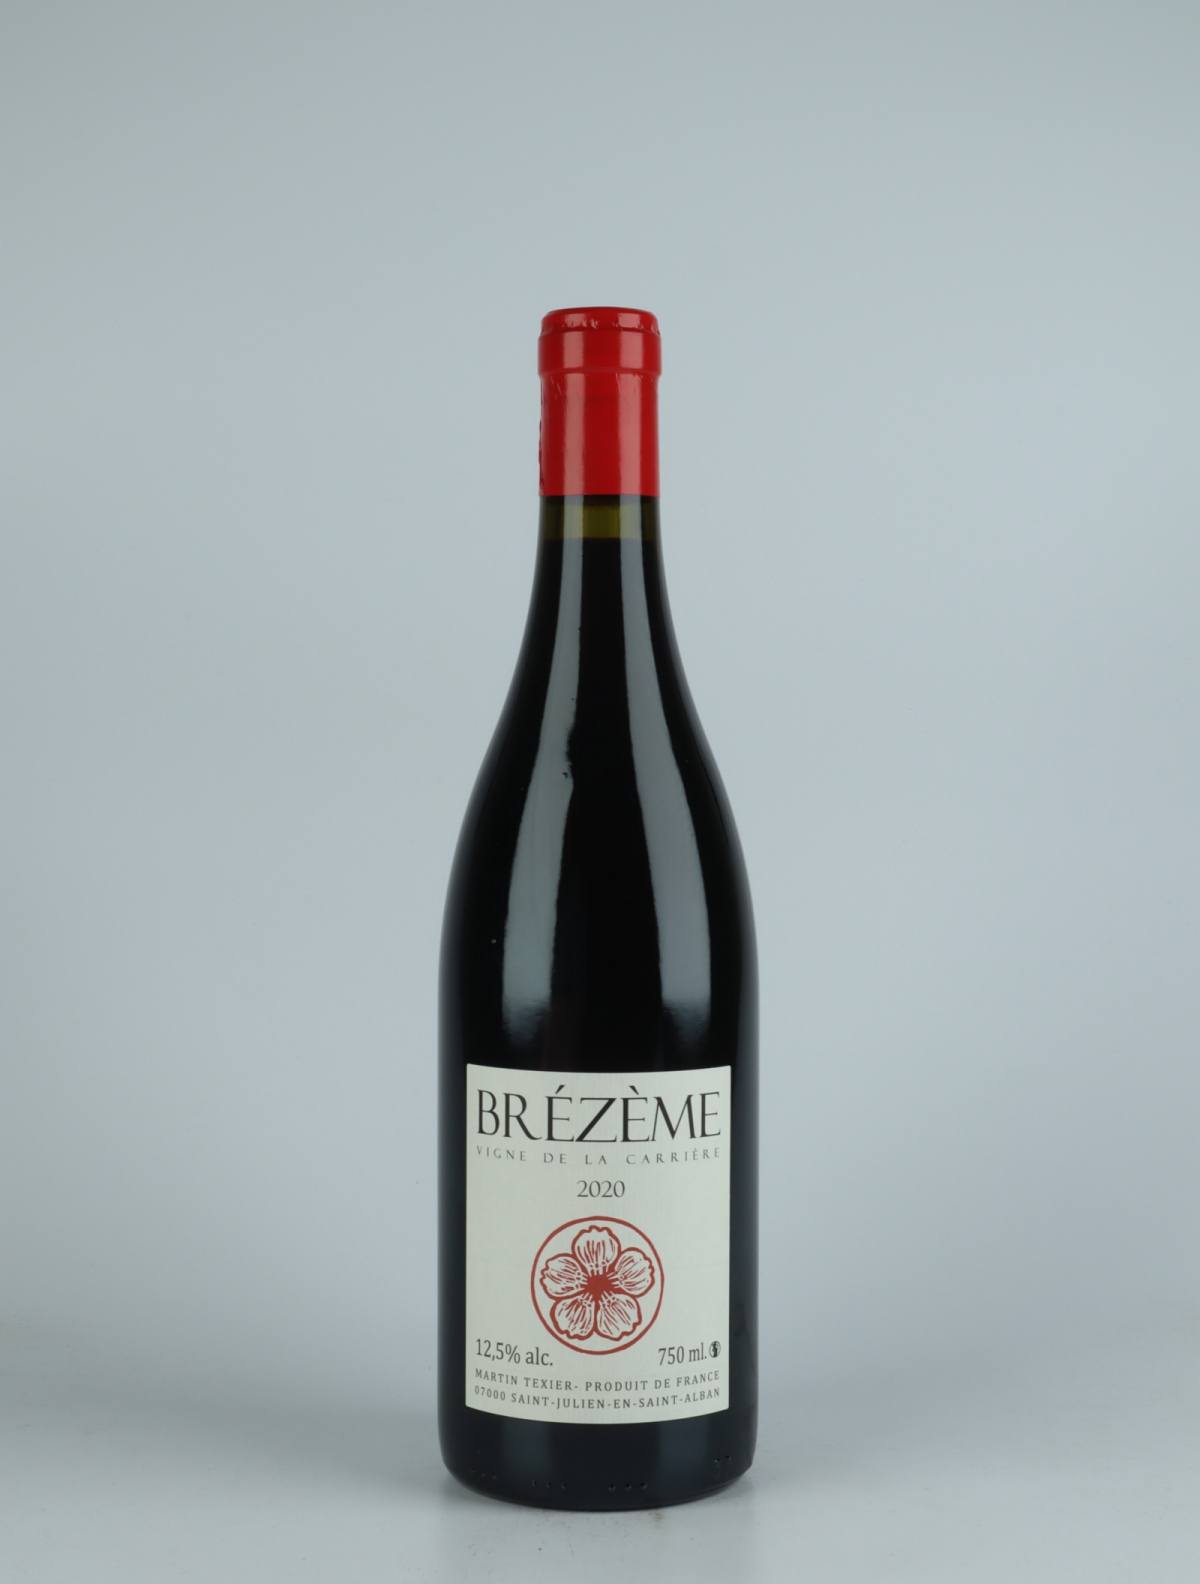 A bottle 2020 Brézème Red wine from Martin Texier, Rhône in France